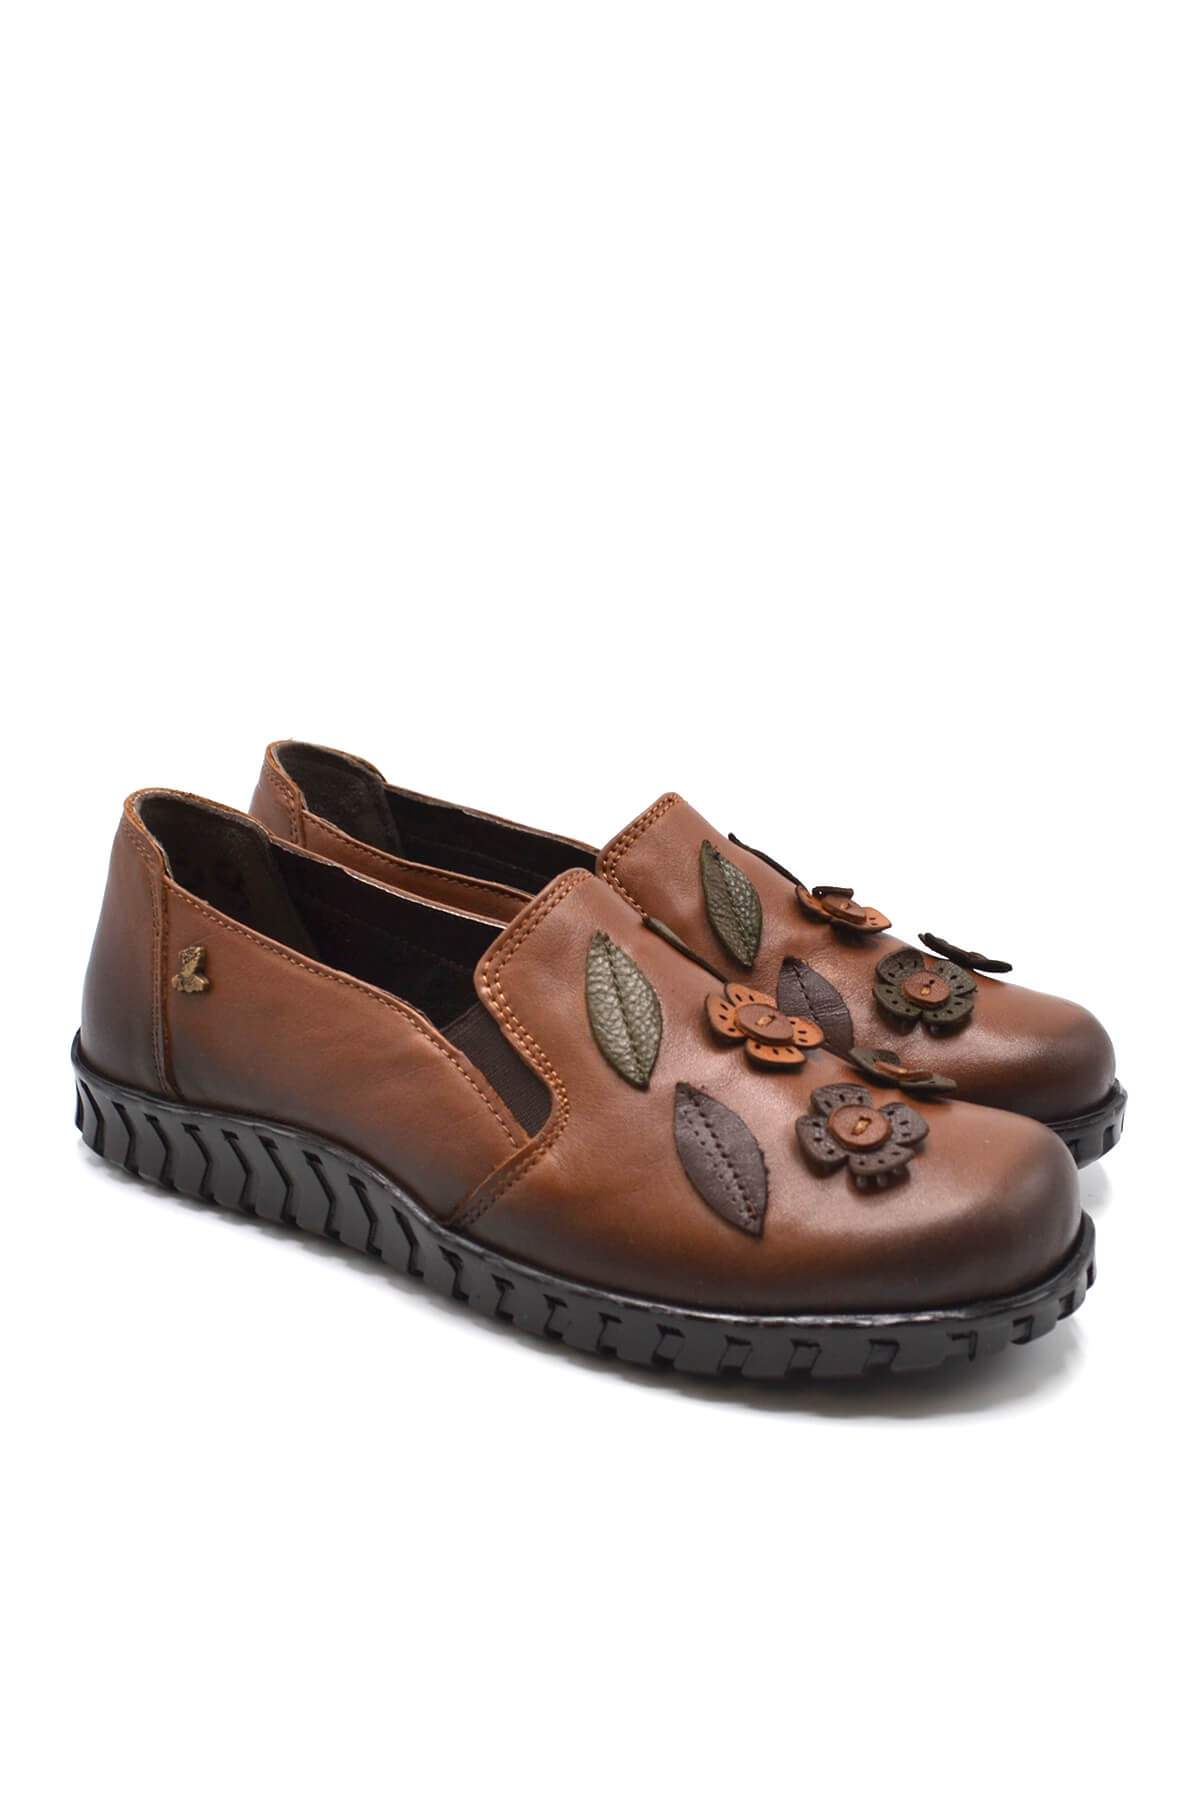 Kadın Comfort Deri Ayakkabı Taba 2050862K - Thumbnail